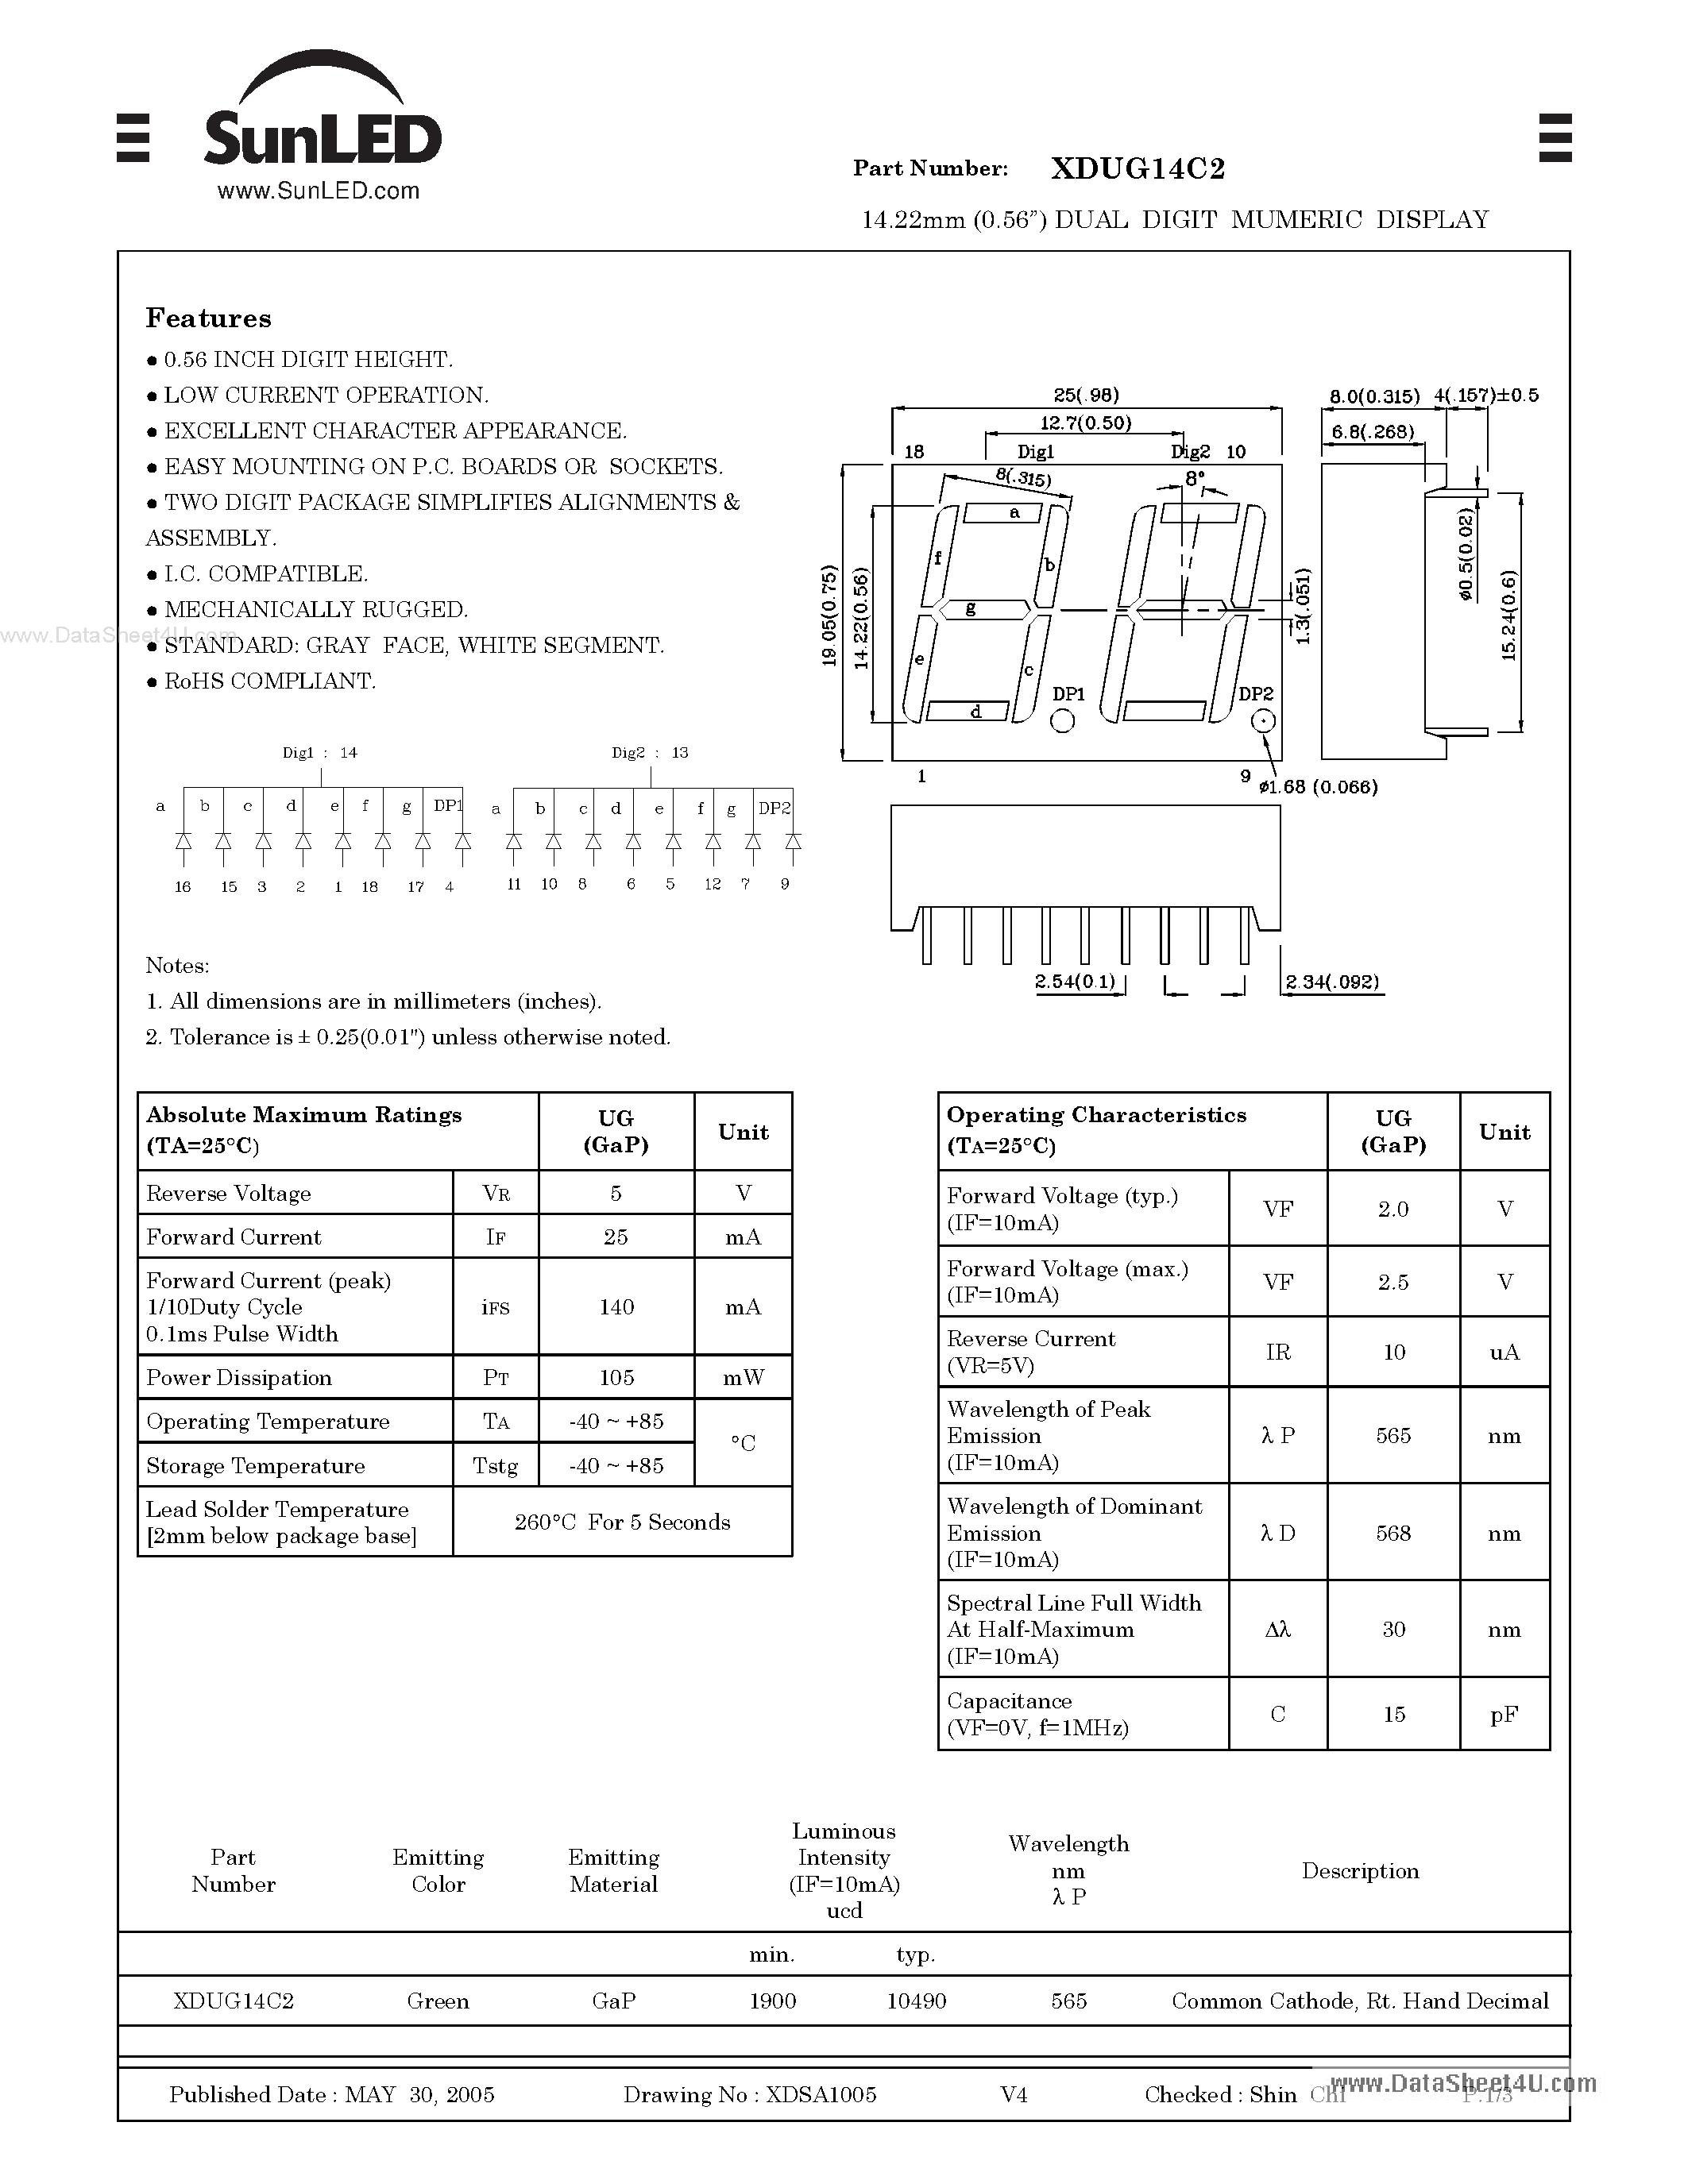 Datasheet XDUG14C2 - 14.22mm (0.56) DUAL DIGIT MUMERIC DISPLAY page 1